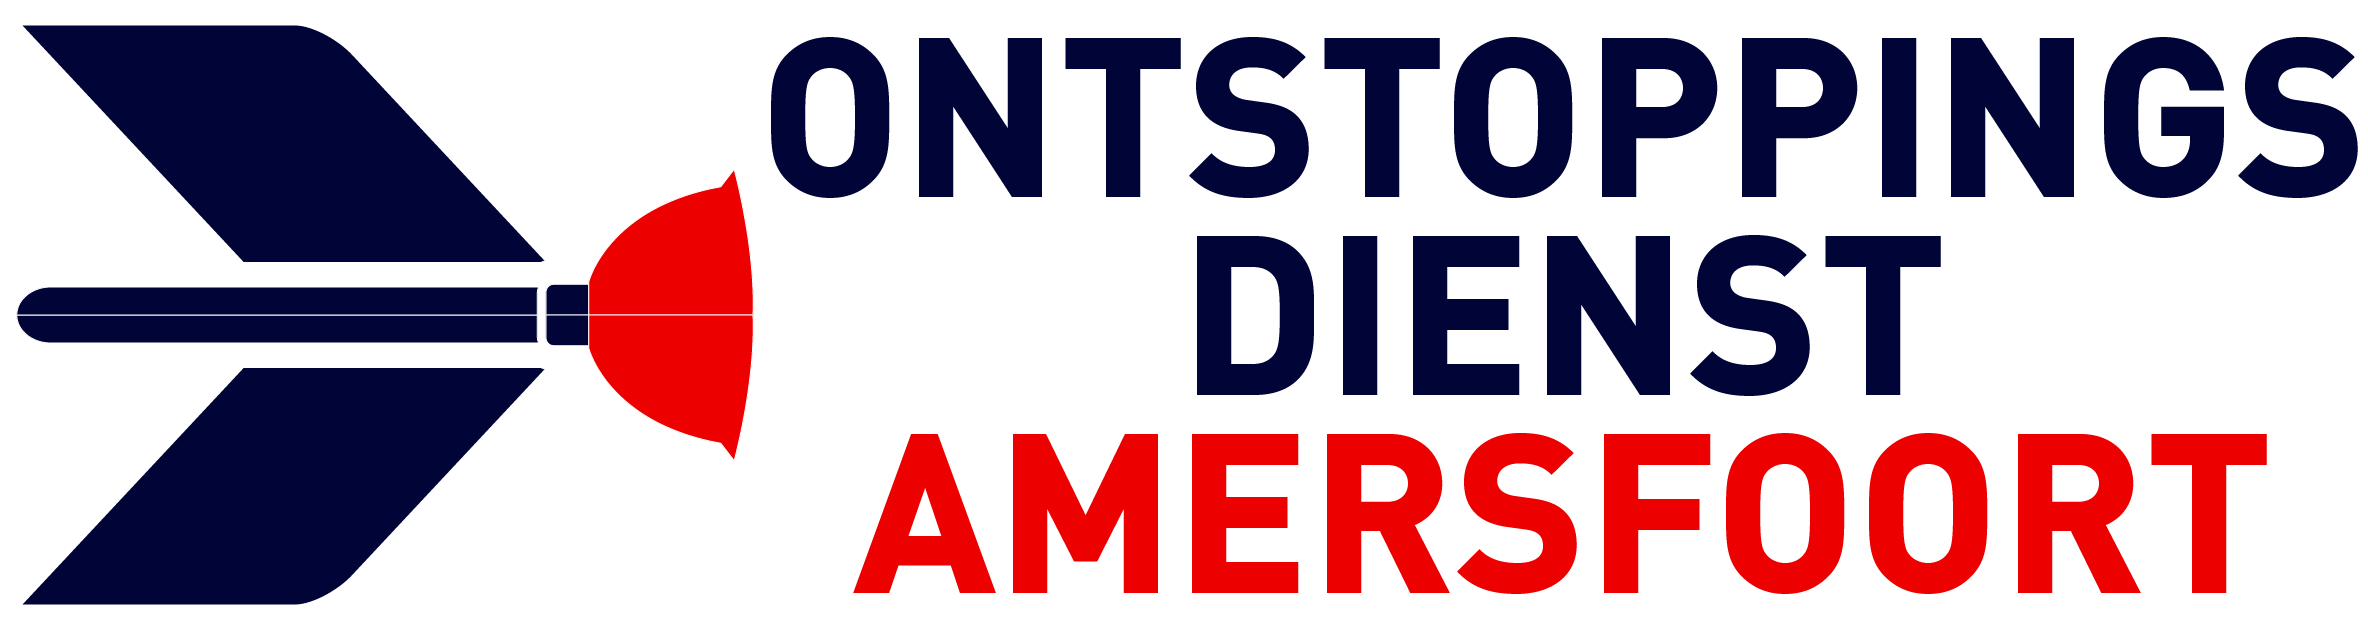 Ontstoppingsdienst Amersfoort logo